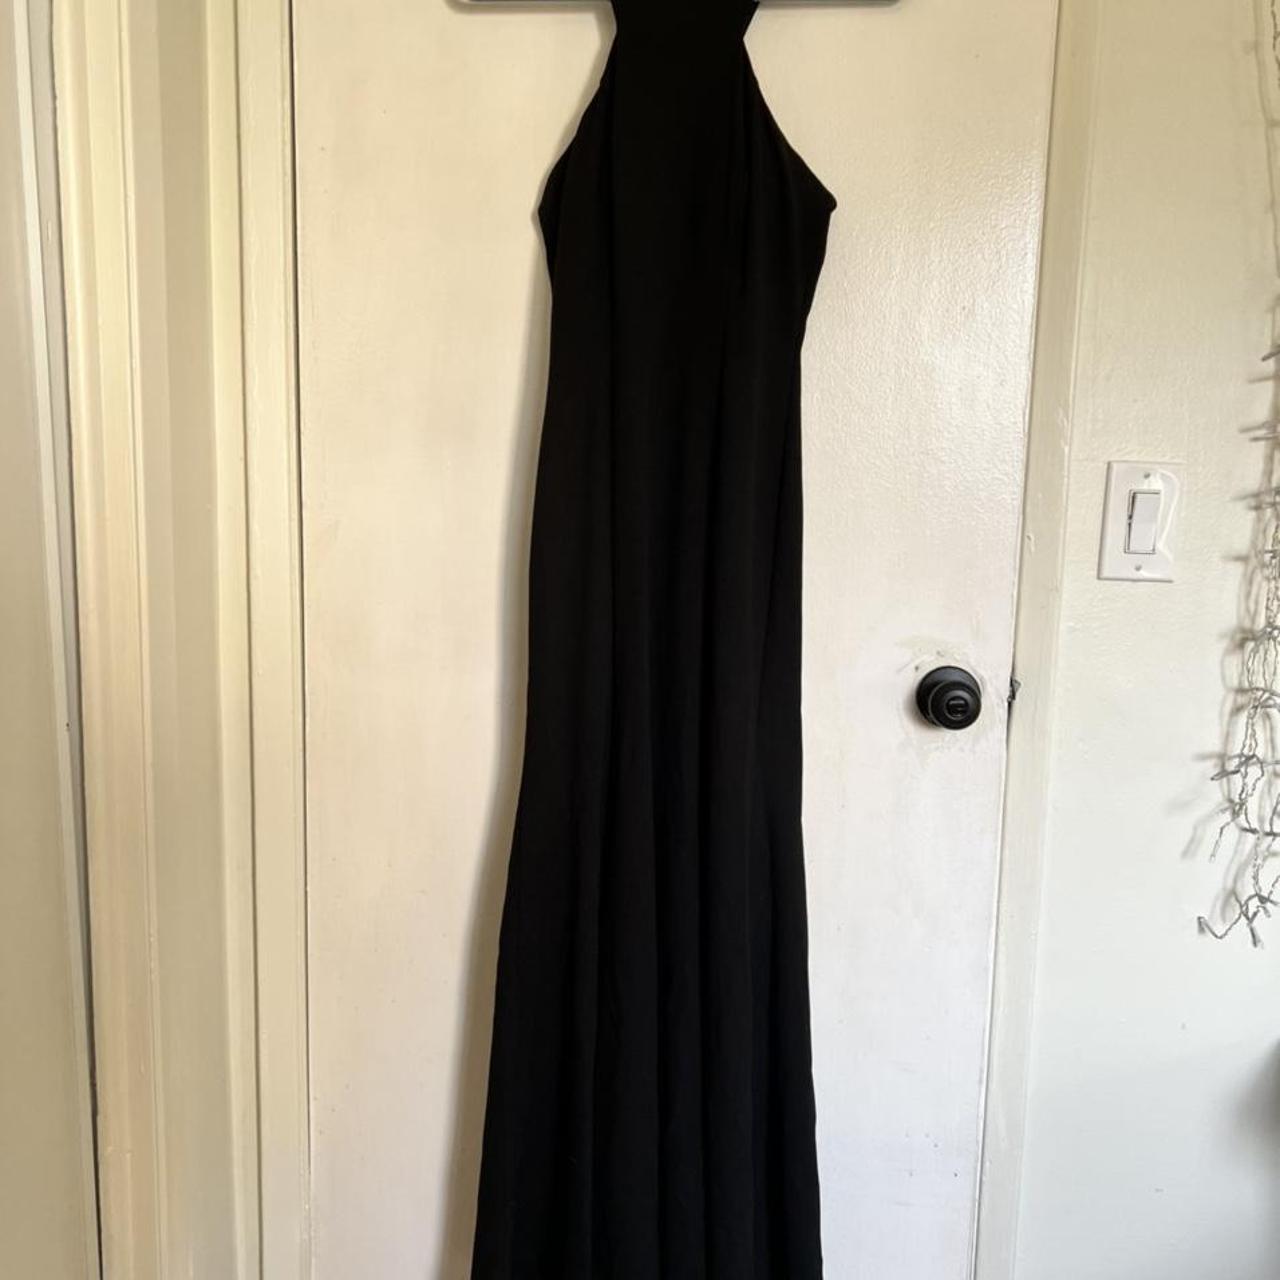 Product Image 2 - Black Fishtail Floor Length Dress

Halter